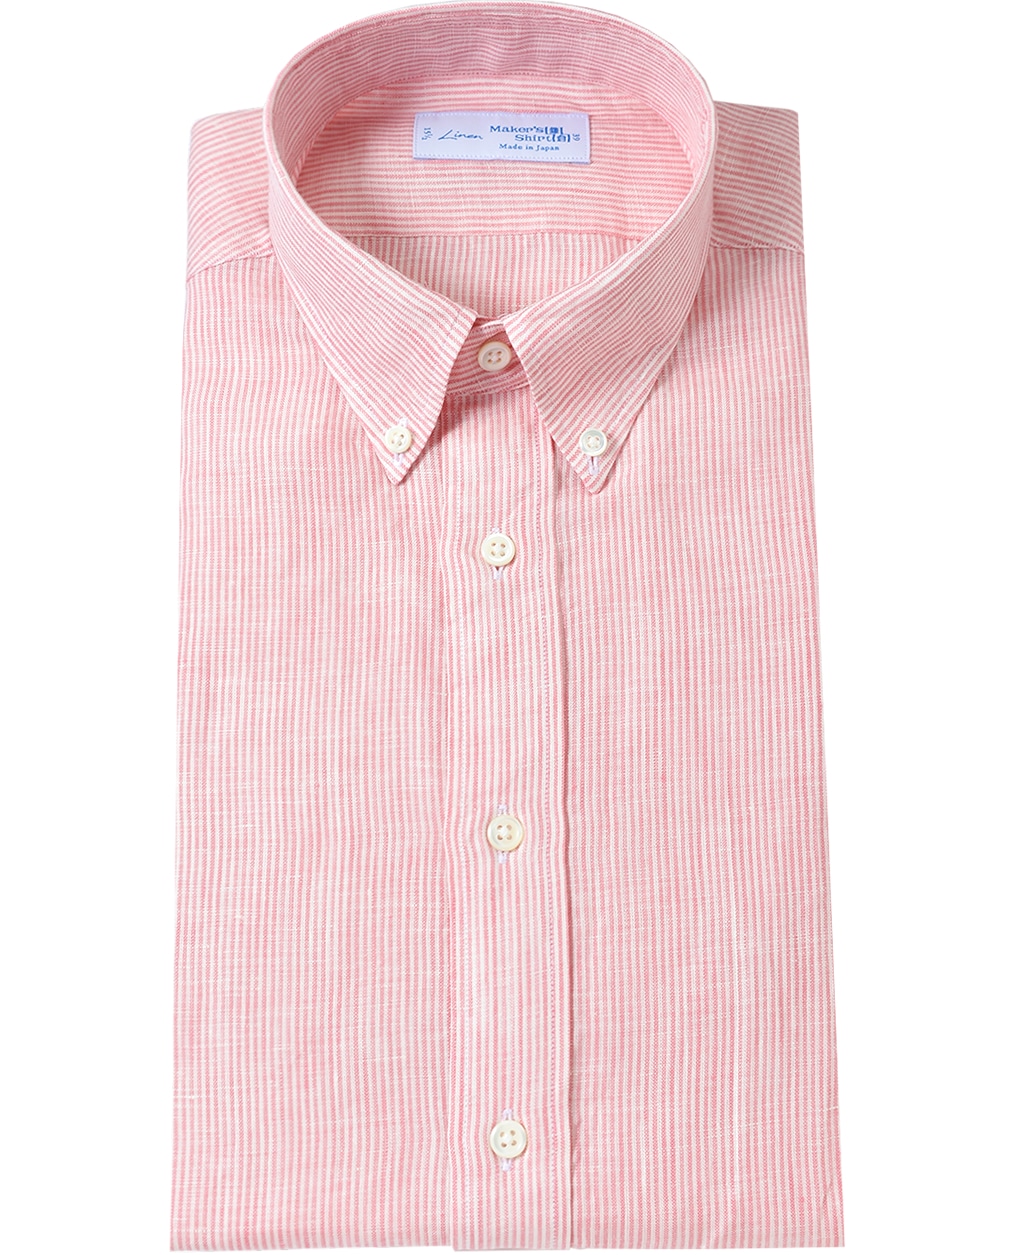 リネンシャツ 37 ピンク系 メンズ メーカーズシャツ鎌倉 公式通販 日本製ワイシャツ ネクタイ ブラウス